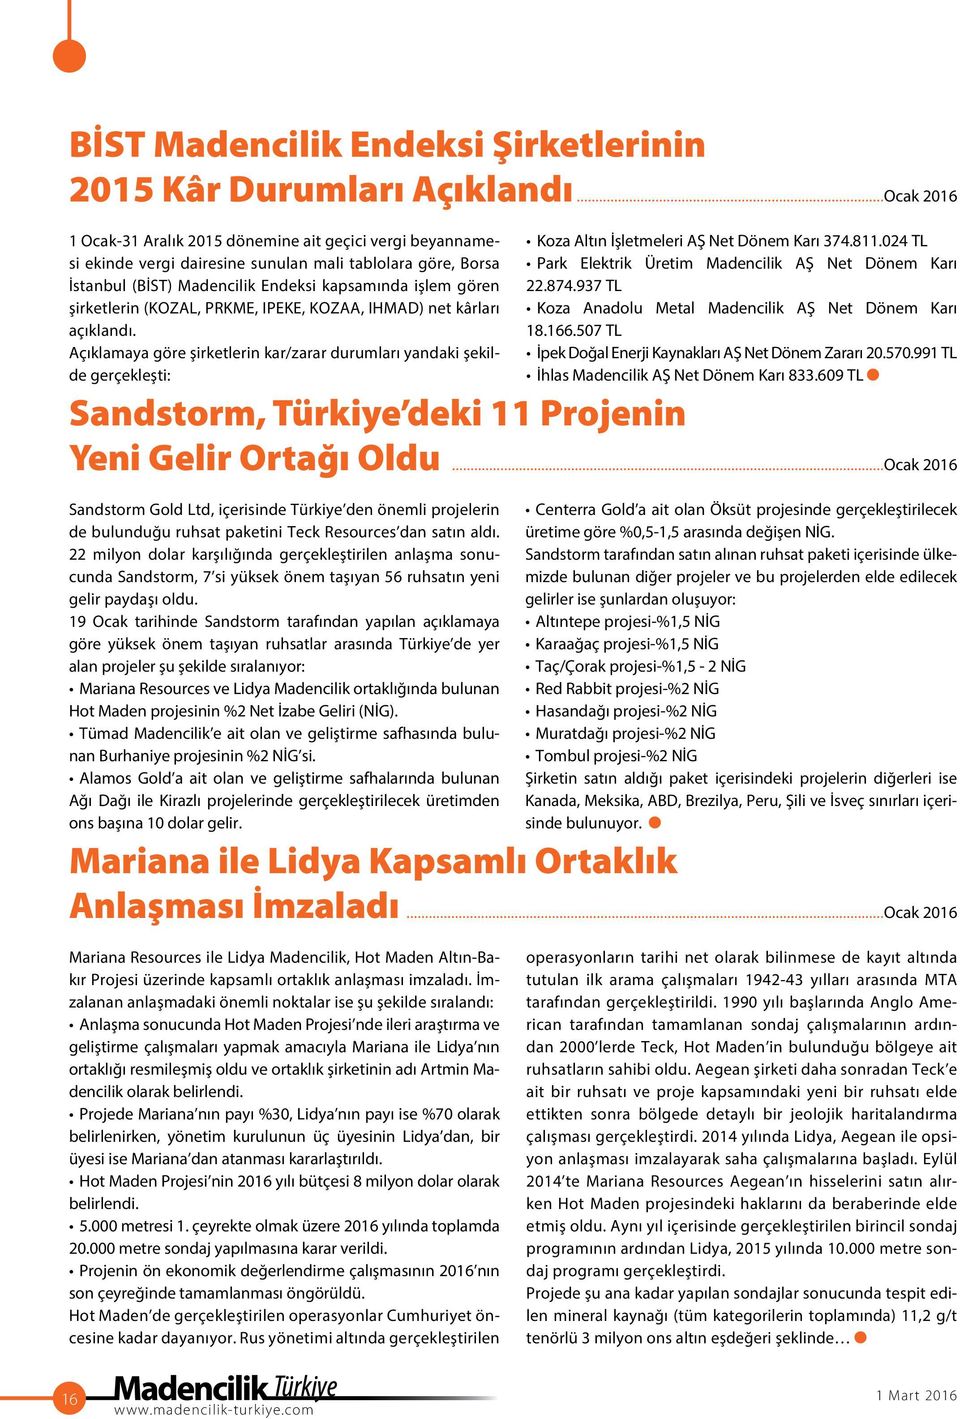 Açıklamaya göre şirketlerin kar/zarar durumları yandaki şekilde gerçekleşti: Sandstorm, Türkiye deki 11 Projenin Yeni Gelir Ortağı Oldu Sandstorm Gold Ltd, içerisinde Türkiye den önemli projelerin de